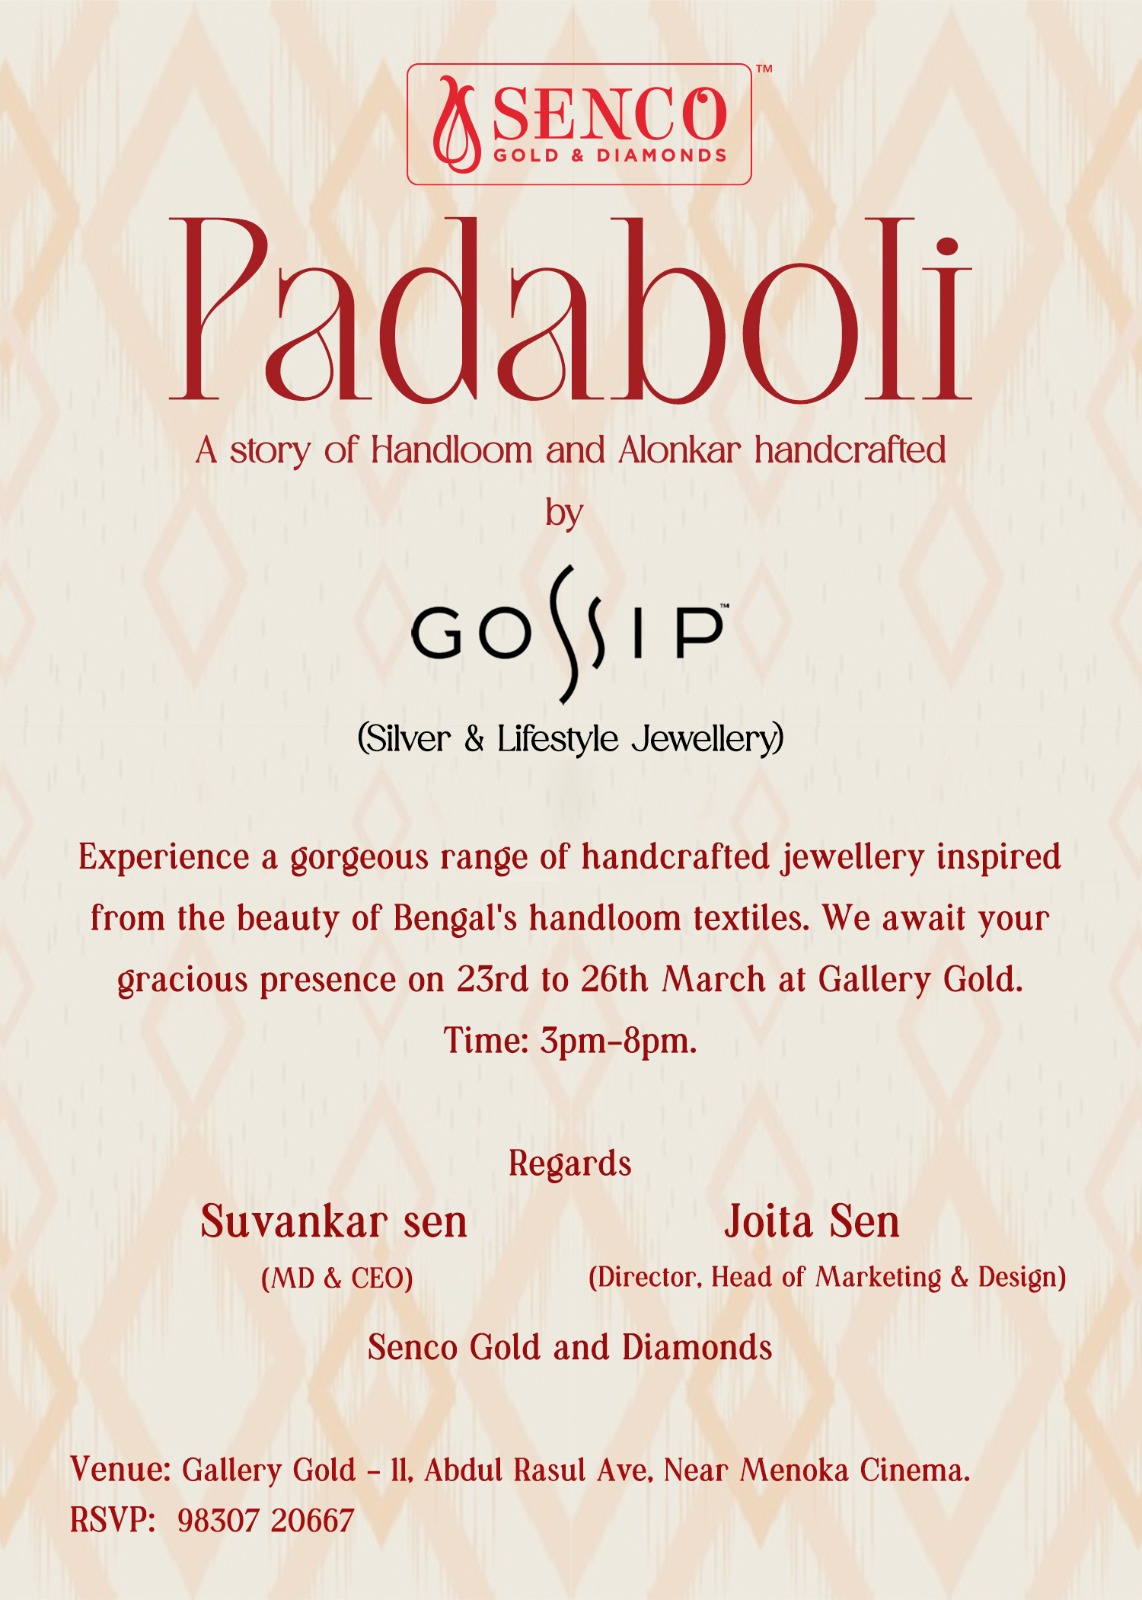 Padabali and Gossip